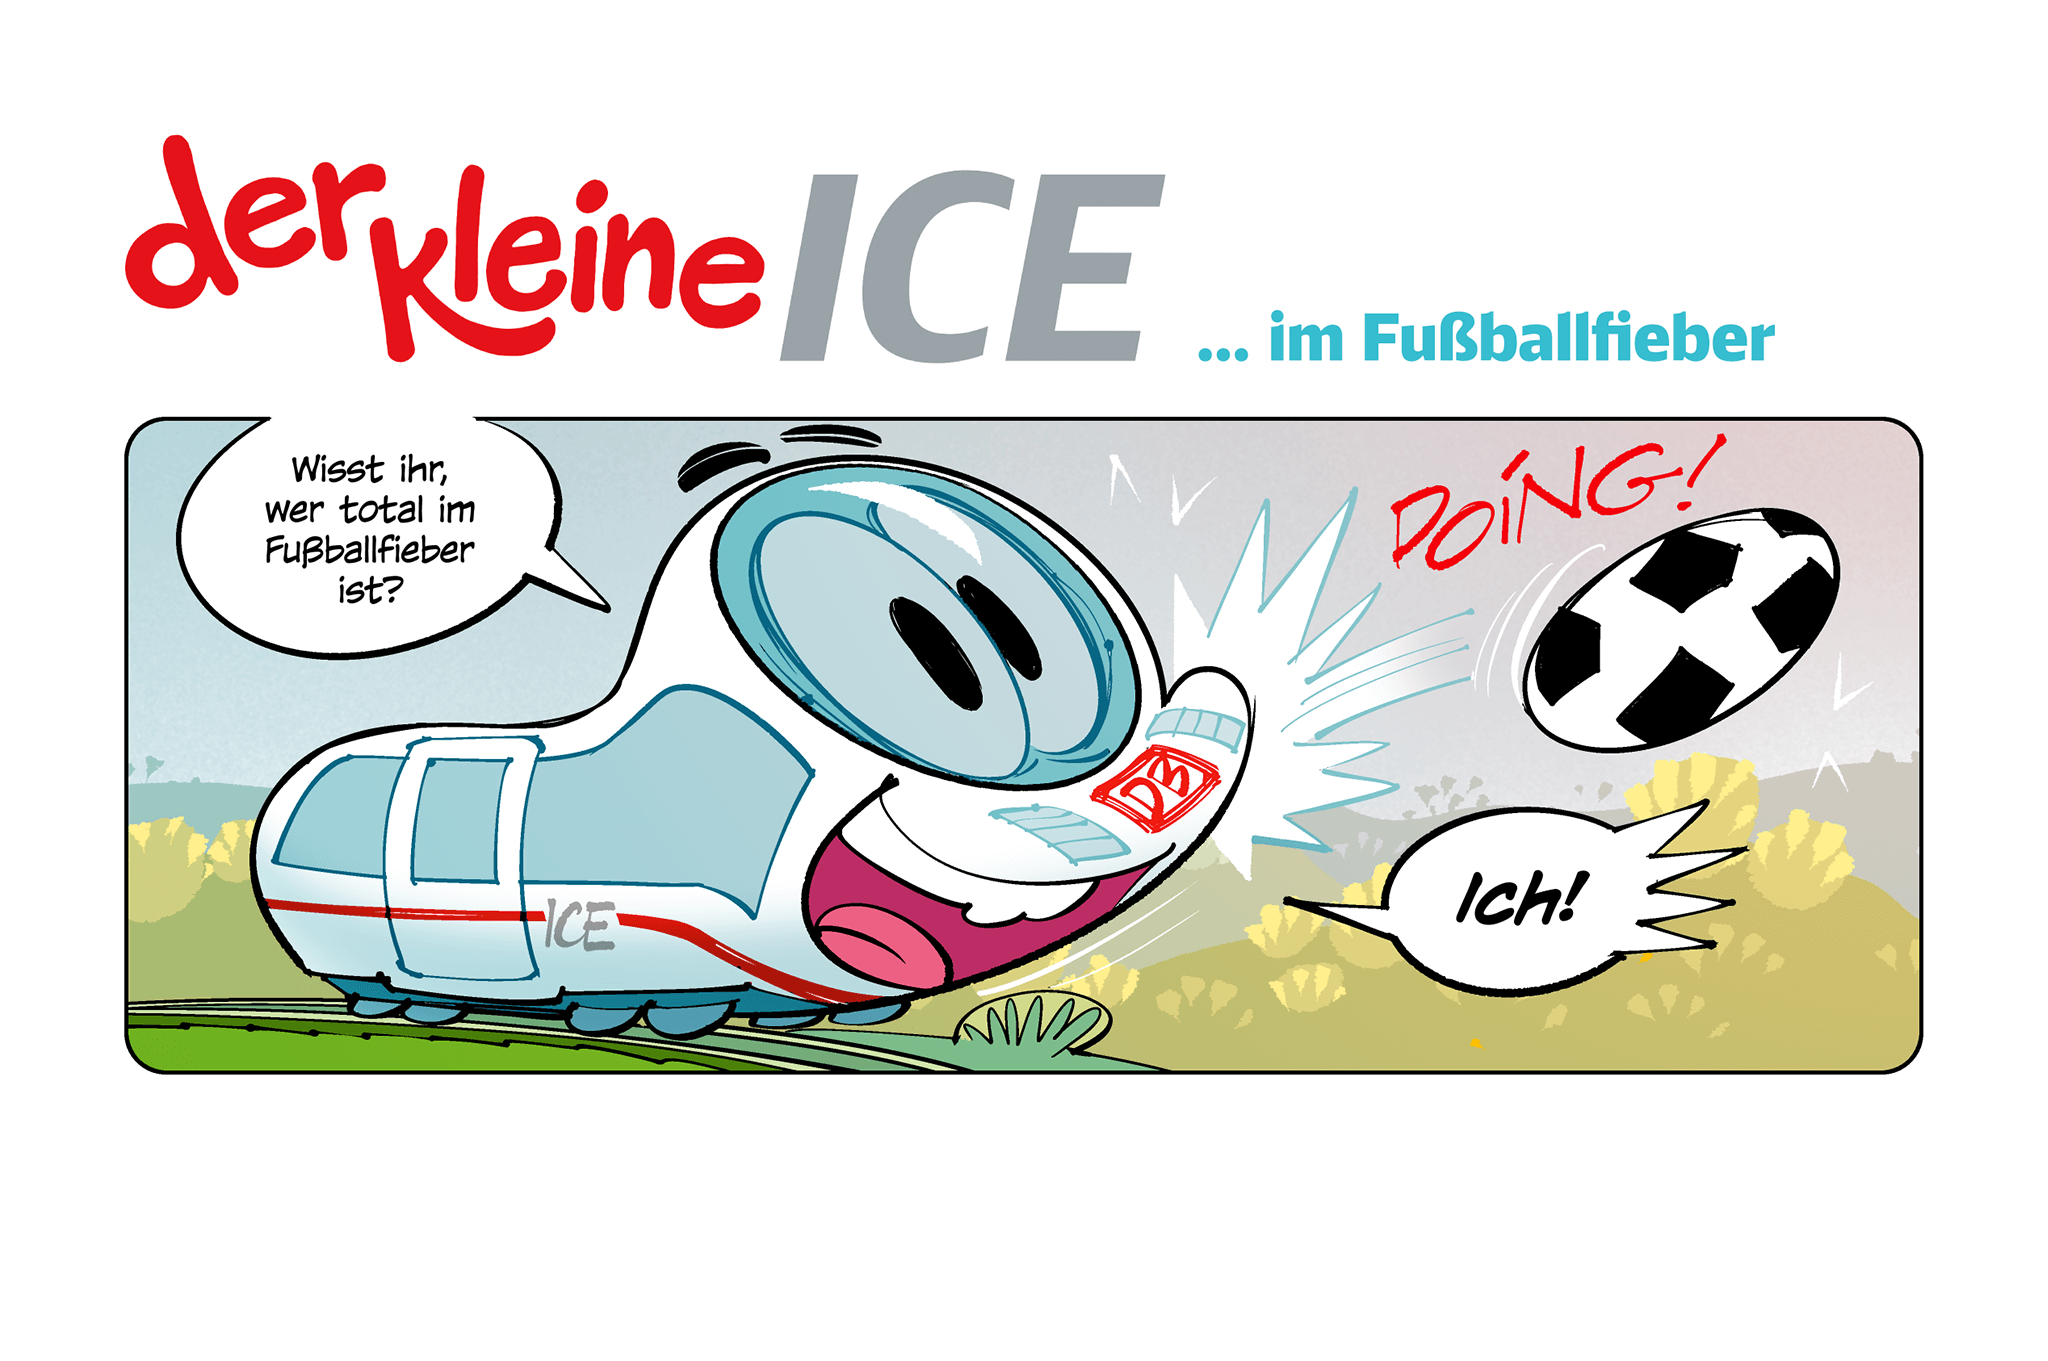 Der kleine ICE ... im Fußballfieber, Comicfigur und Fußball